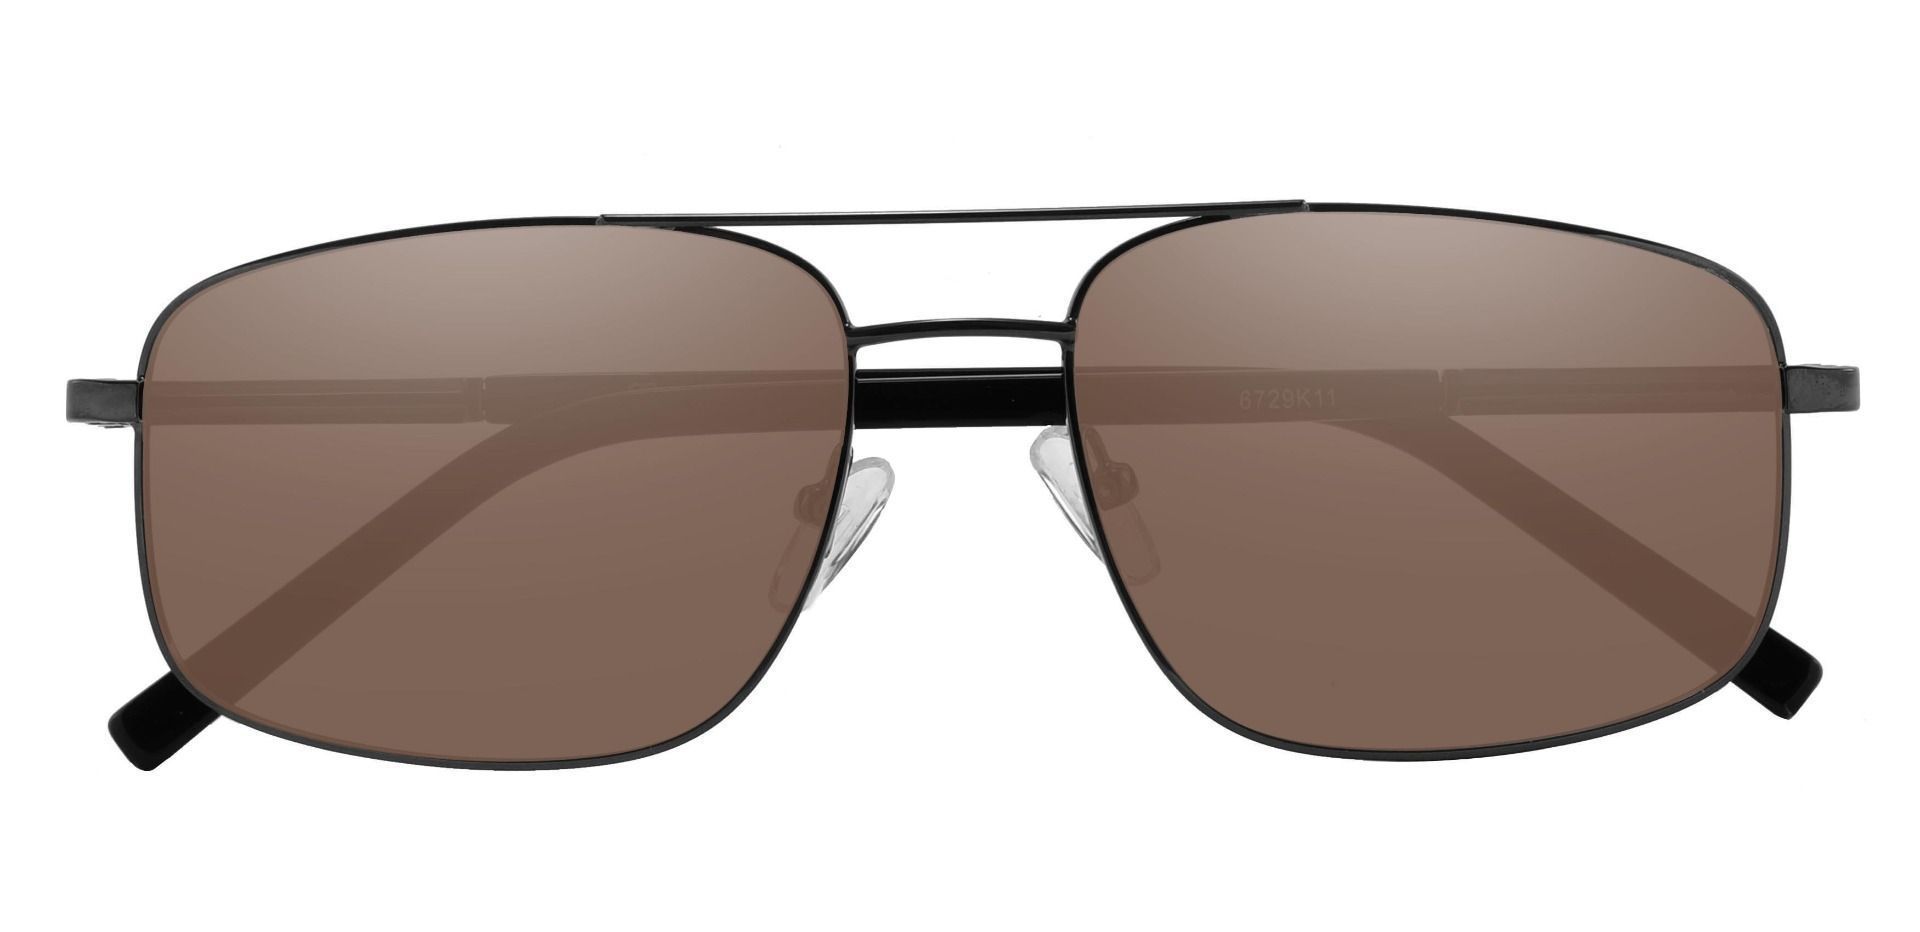 Davenport Aviator Reading Sunglasses - Black Frame With Brown Lenses